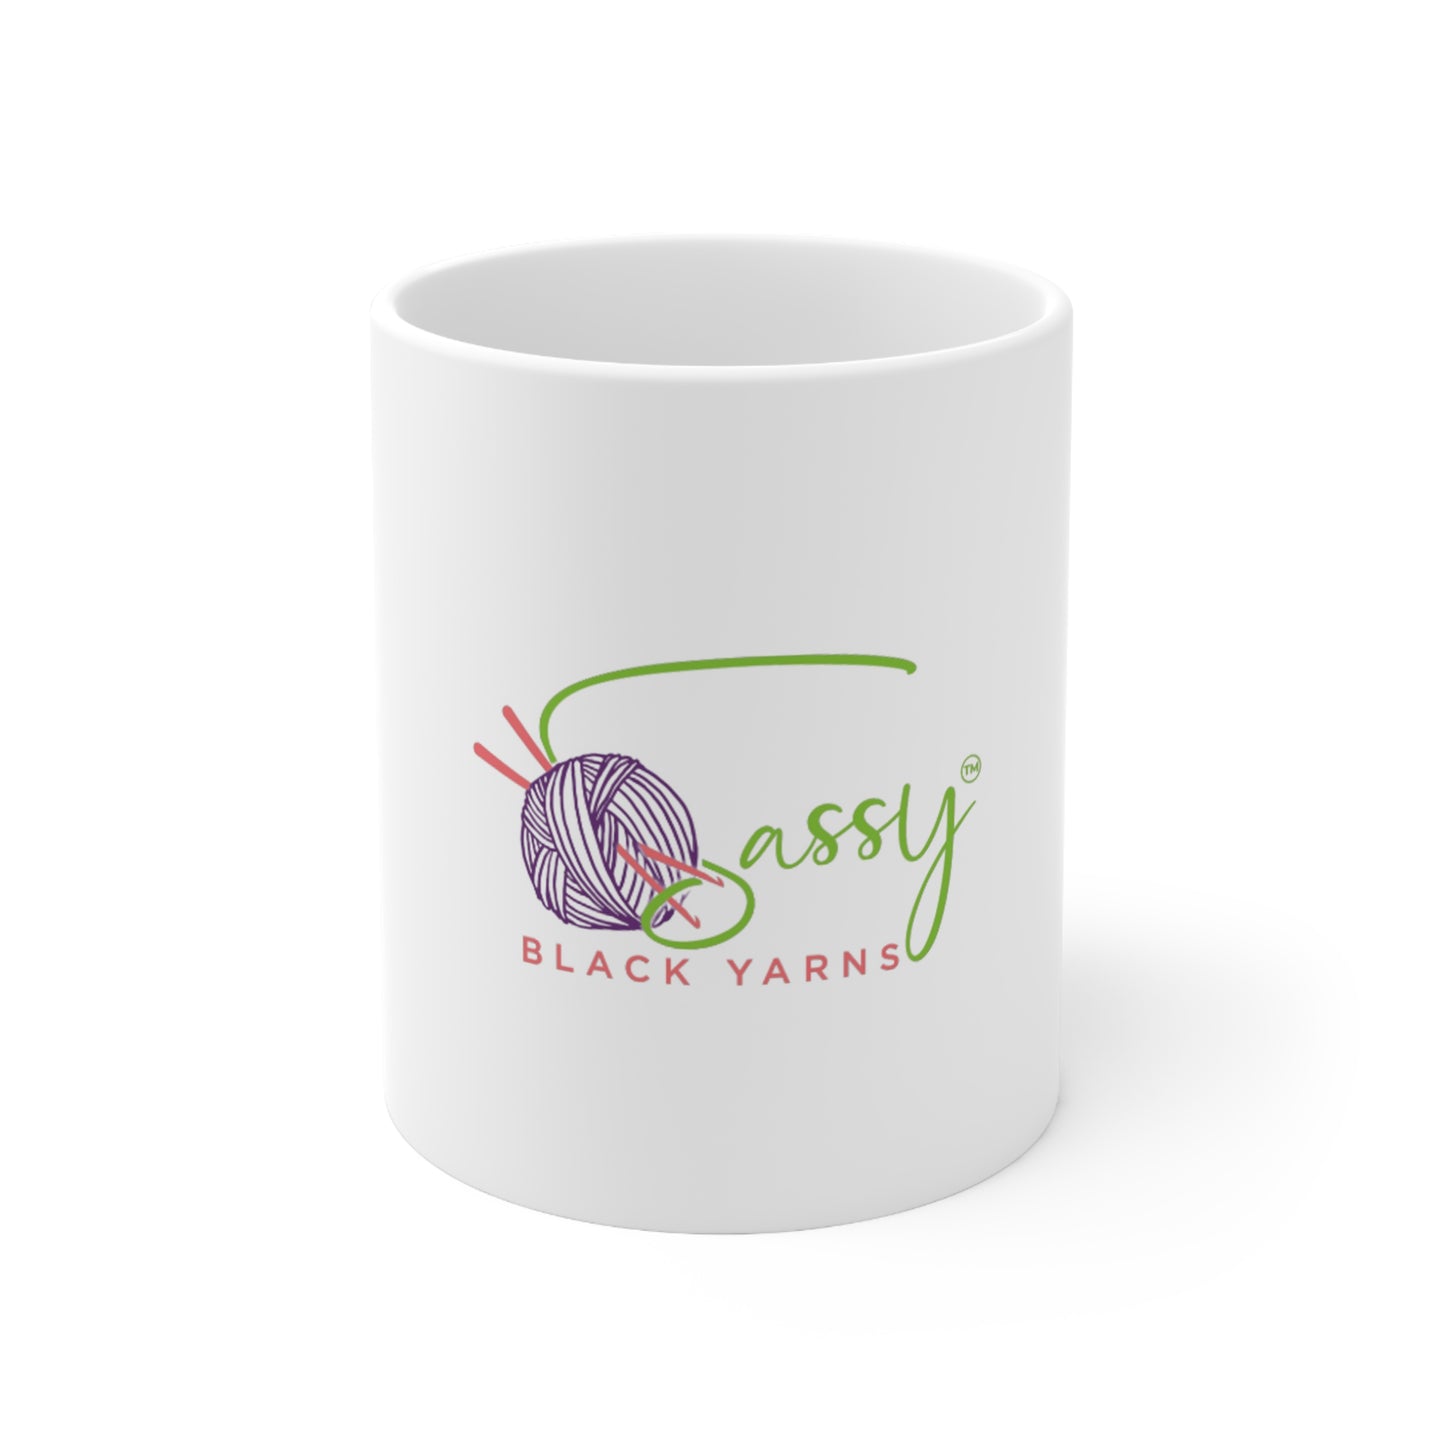 Sassy Black Yarns - Ceramic Mug 11oz